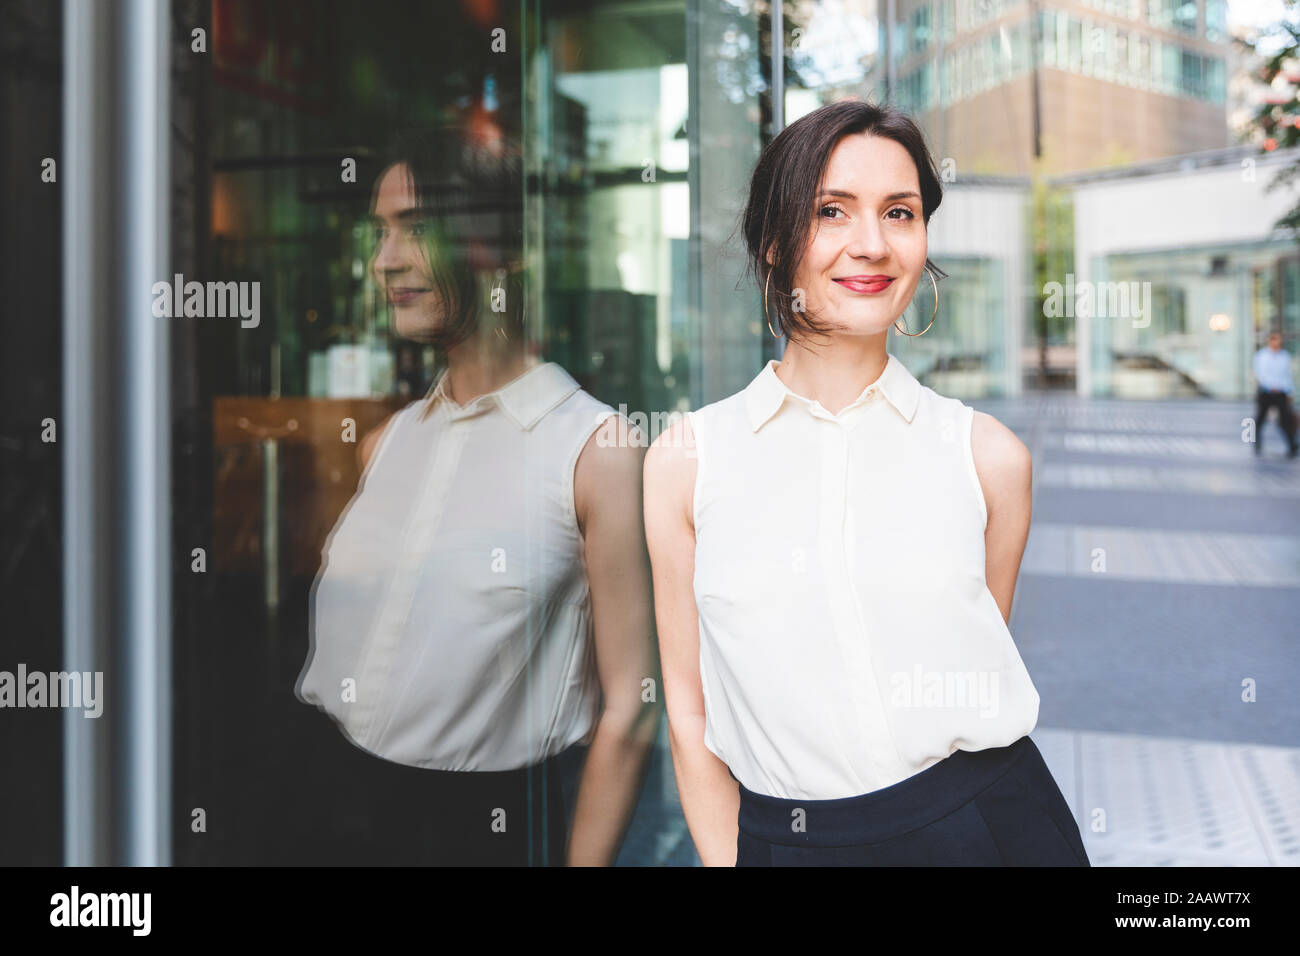 Ritratto di fiducioso giovane imprenditrice riflessa nella parte anteriore in vetro, Berlino, Germania Foto Stock